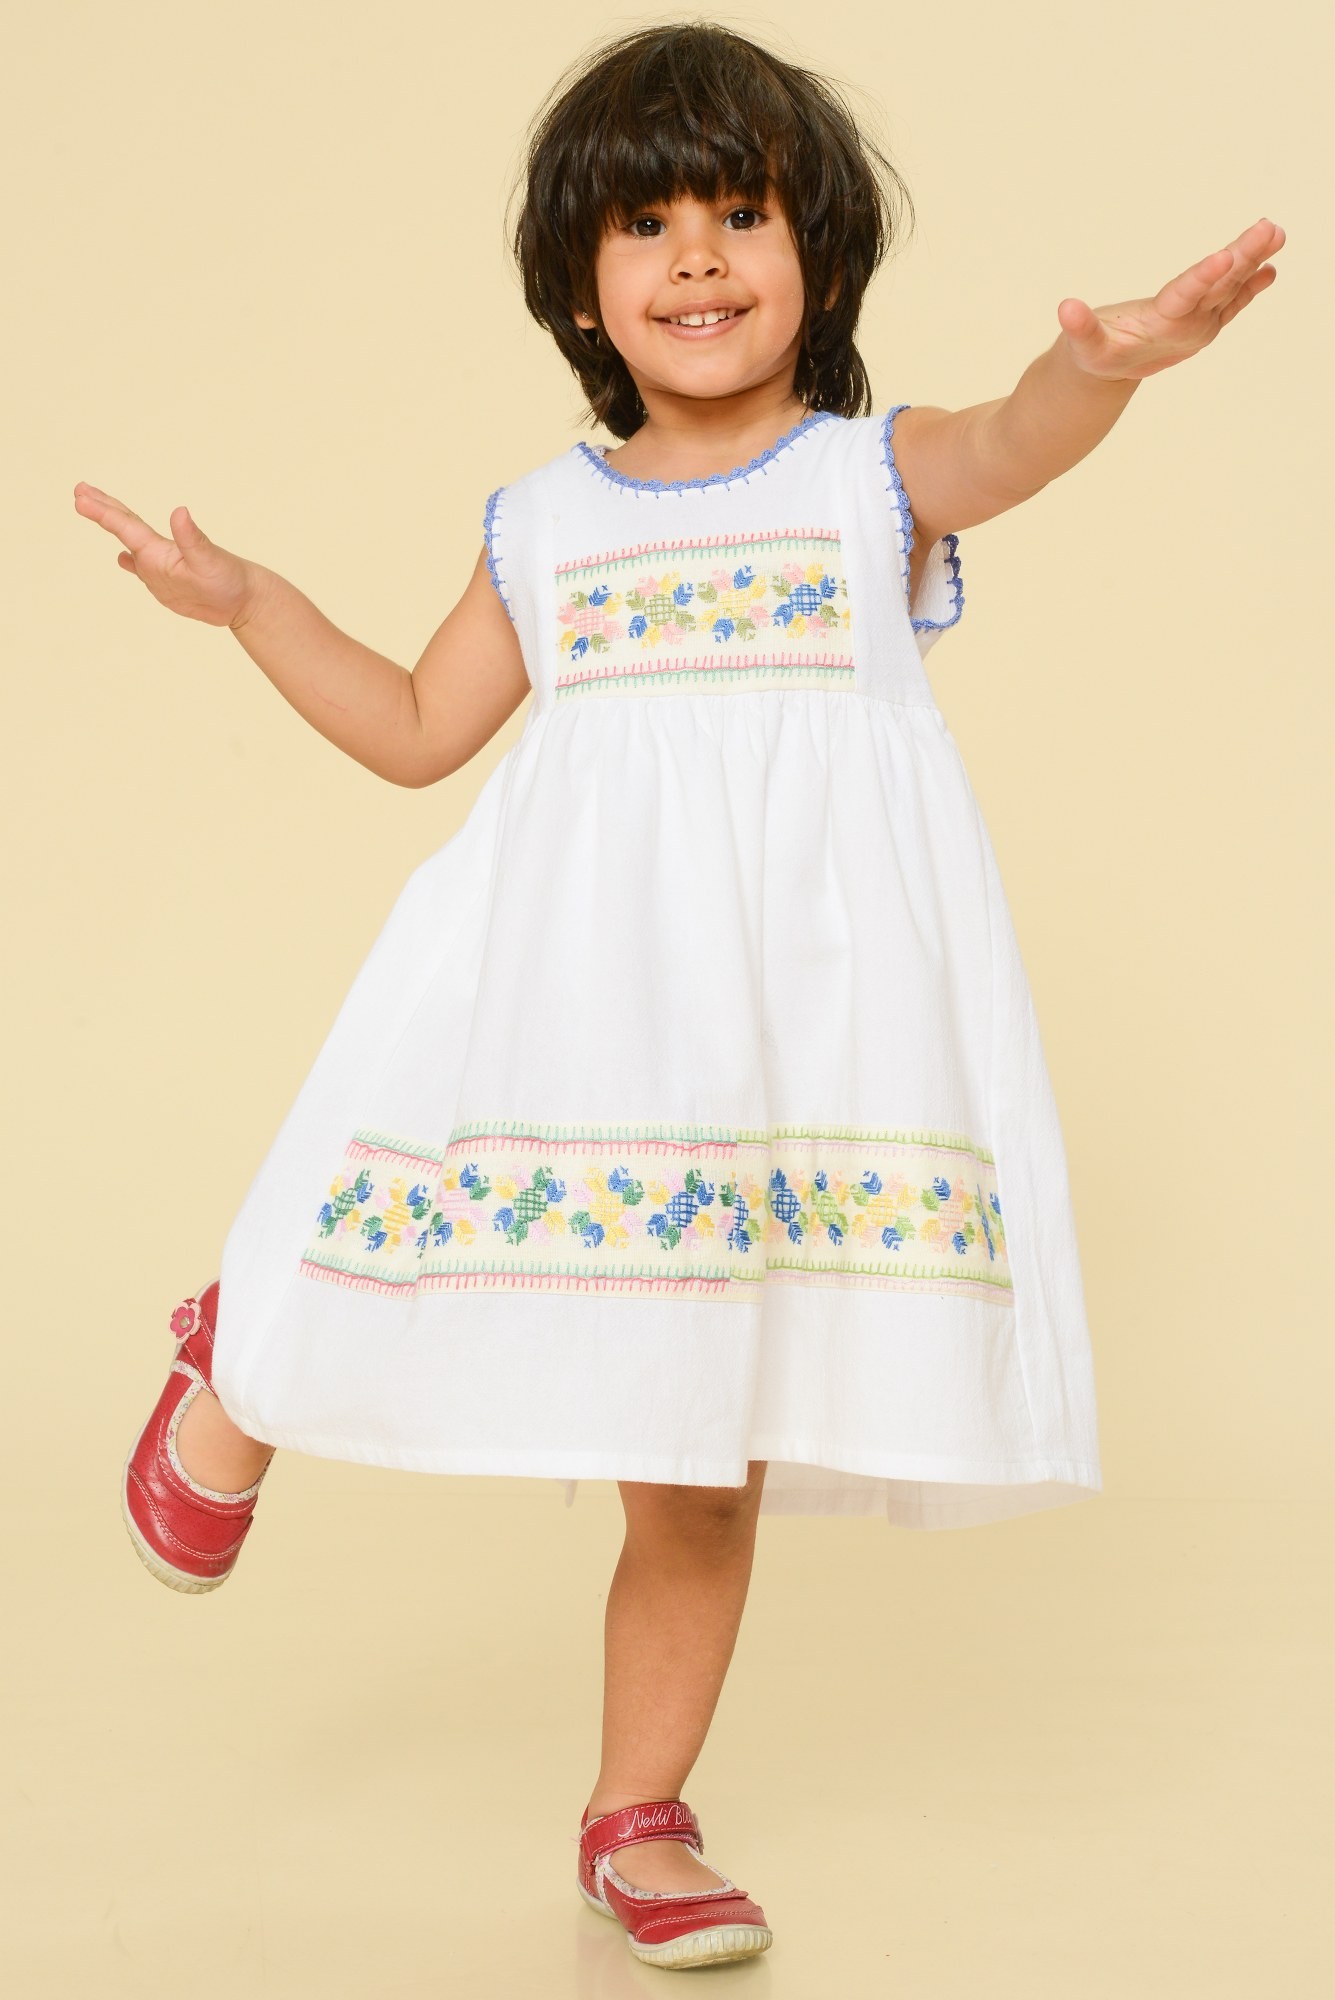 Rochie alba copii cu broderie colorata